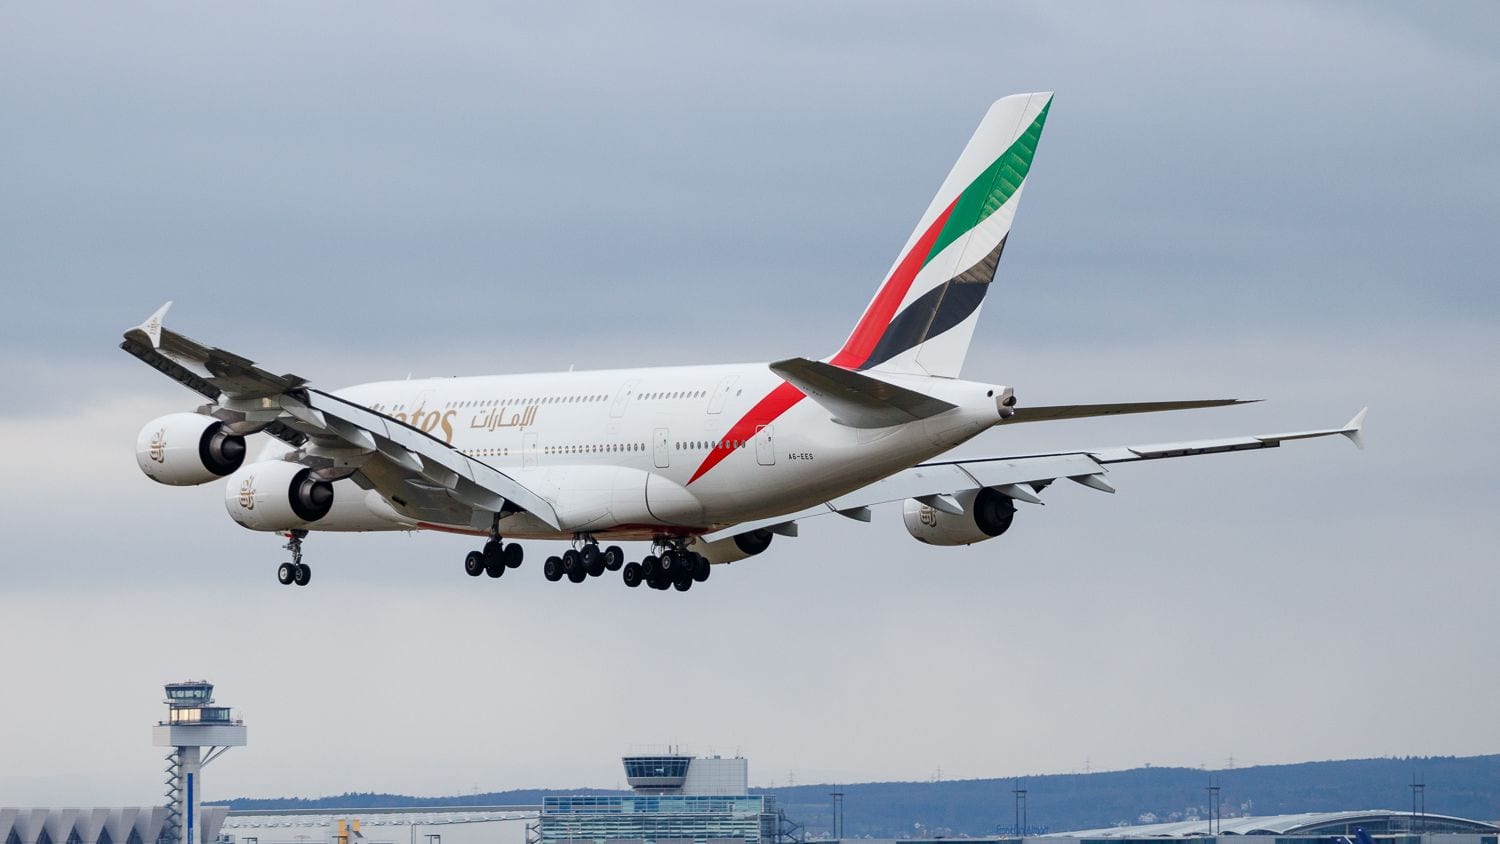 Emirates, Airbus A380